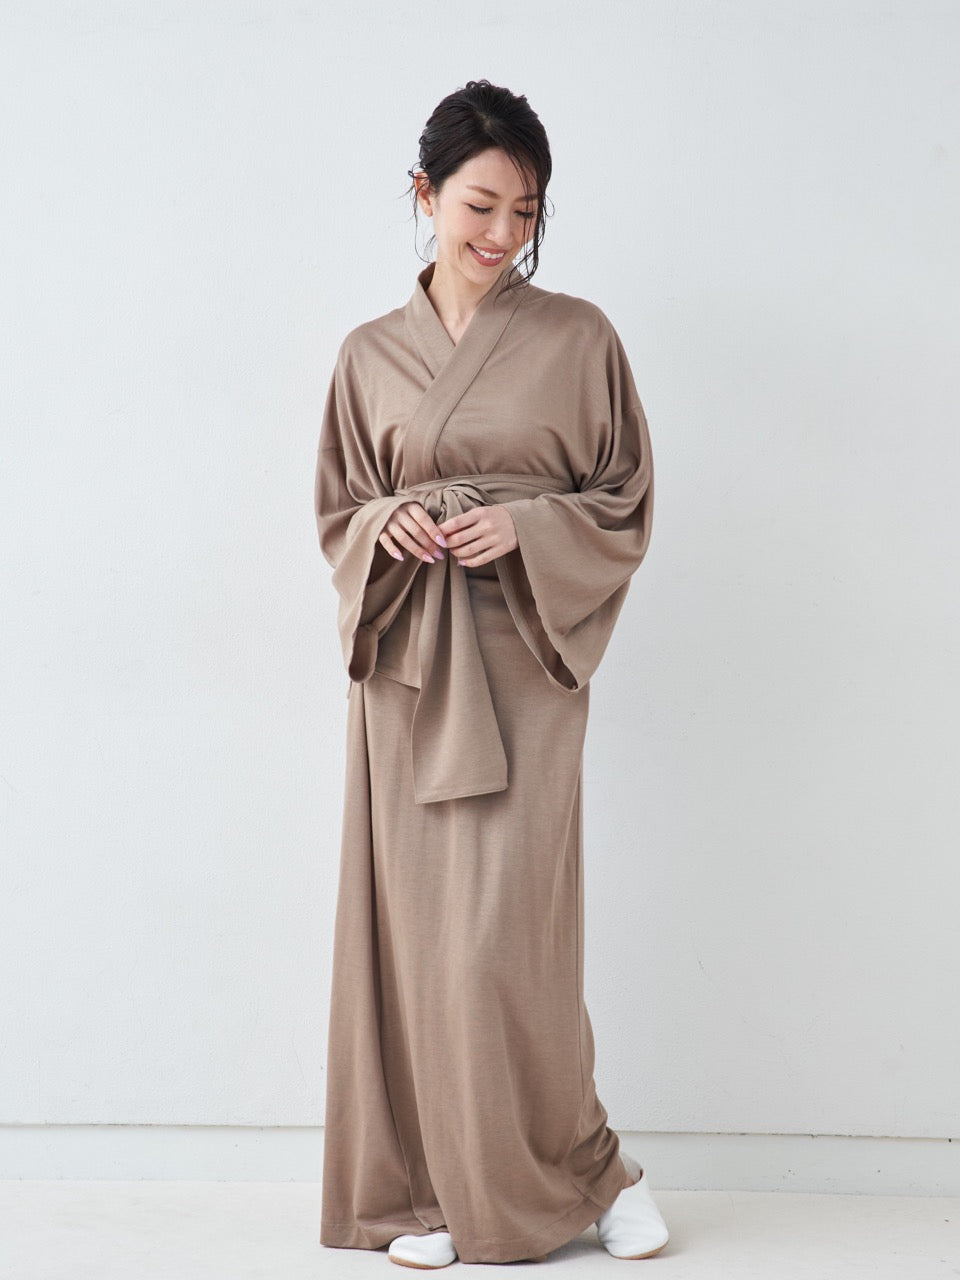 
                  
                    浴衣ルームウェア・プレミアム-キャメル- Yukata Roomwear Premium-Camel-
                  
                